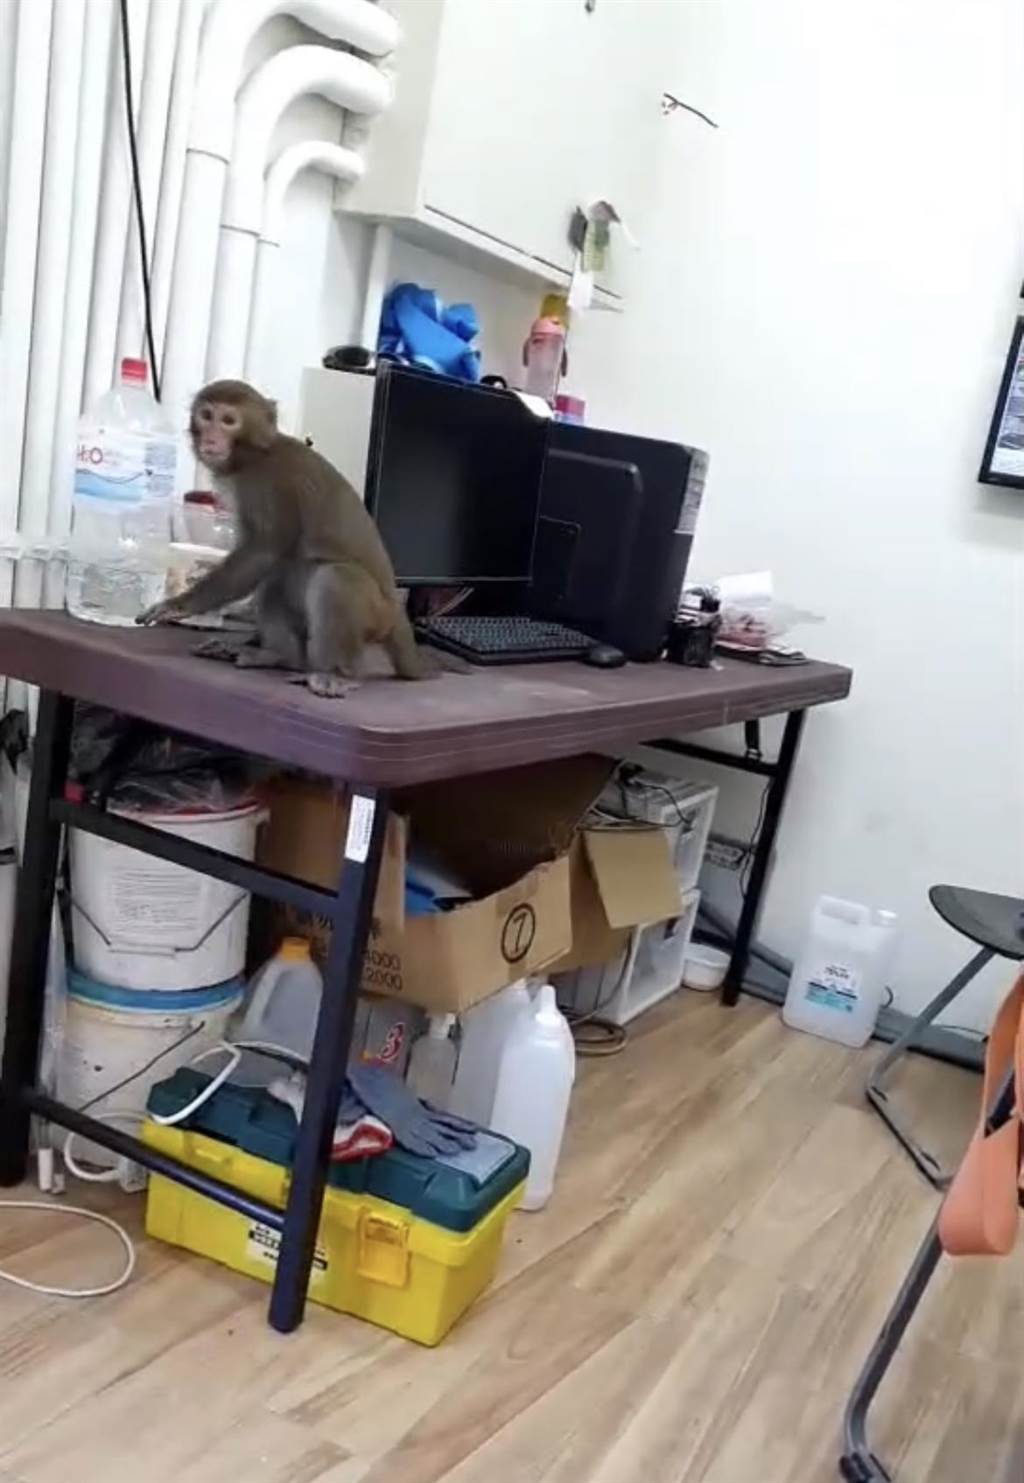 台南山上花園水道博物館今天出現台灣獼猴在辦公室「視察」